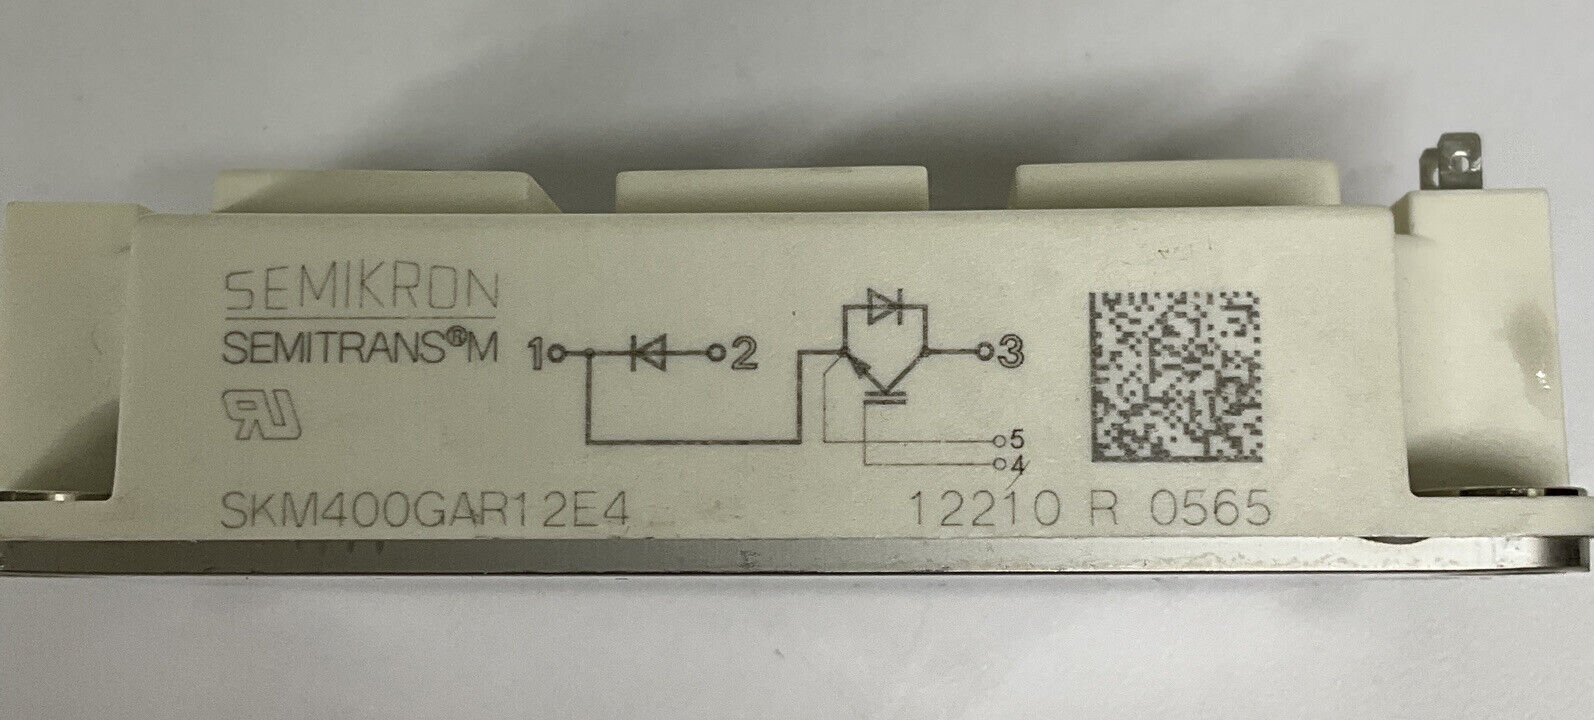 Semikron SKM400GAR12E4 New Single 616A 1.8V IGBT Module (CL349) - 0